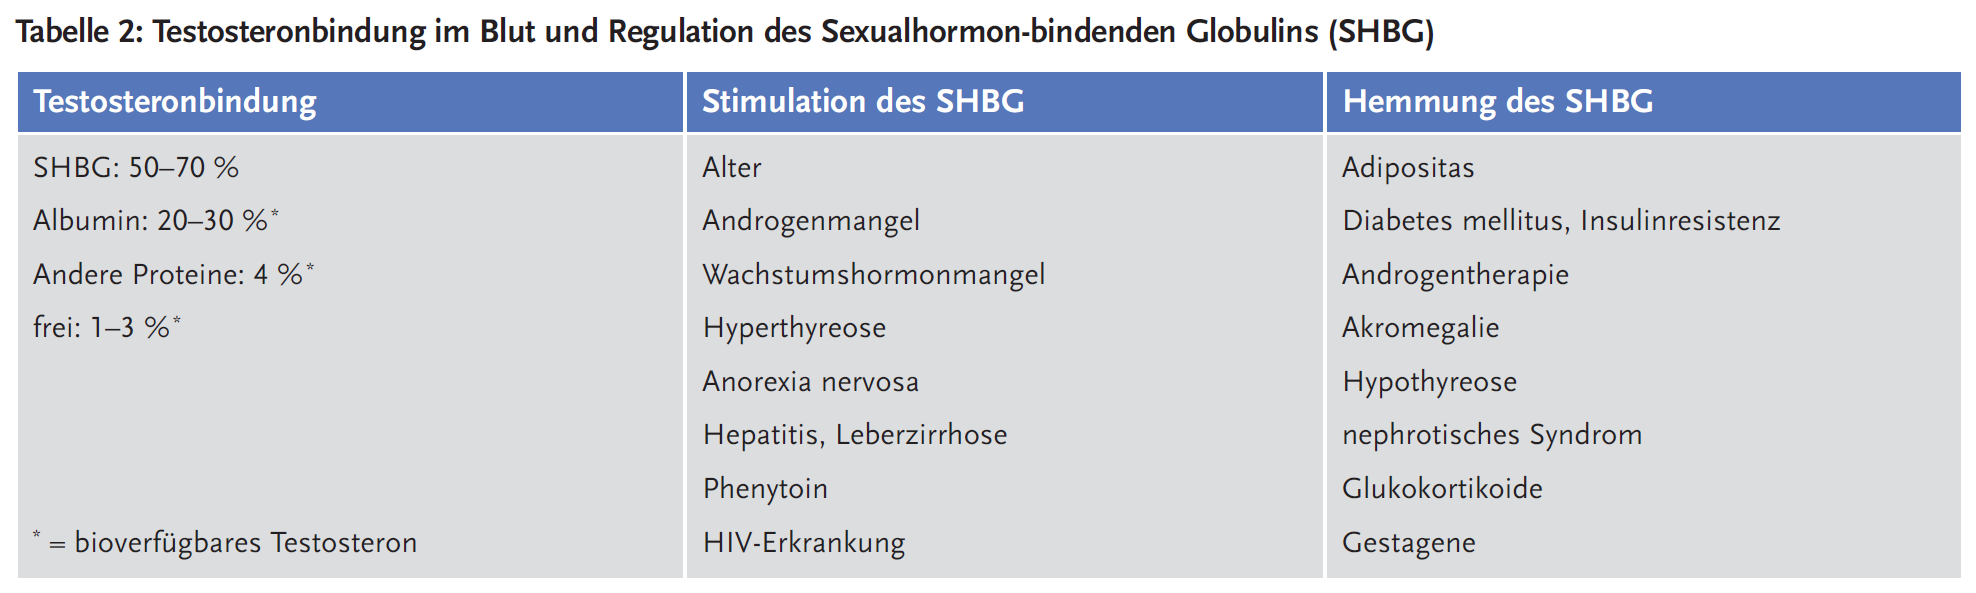 Tabelle 2: Testosteronbindung im Blut und Regulation des Sexualhormon-bindenden Globulins (SHBG)